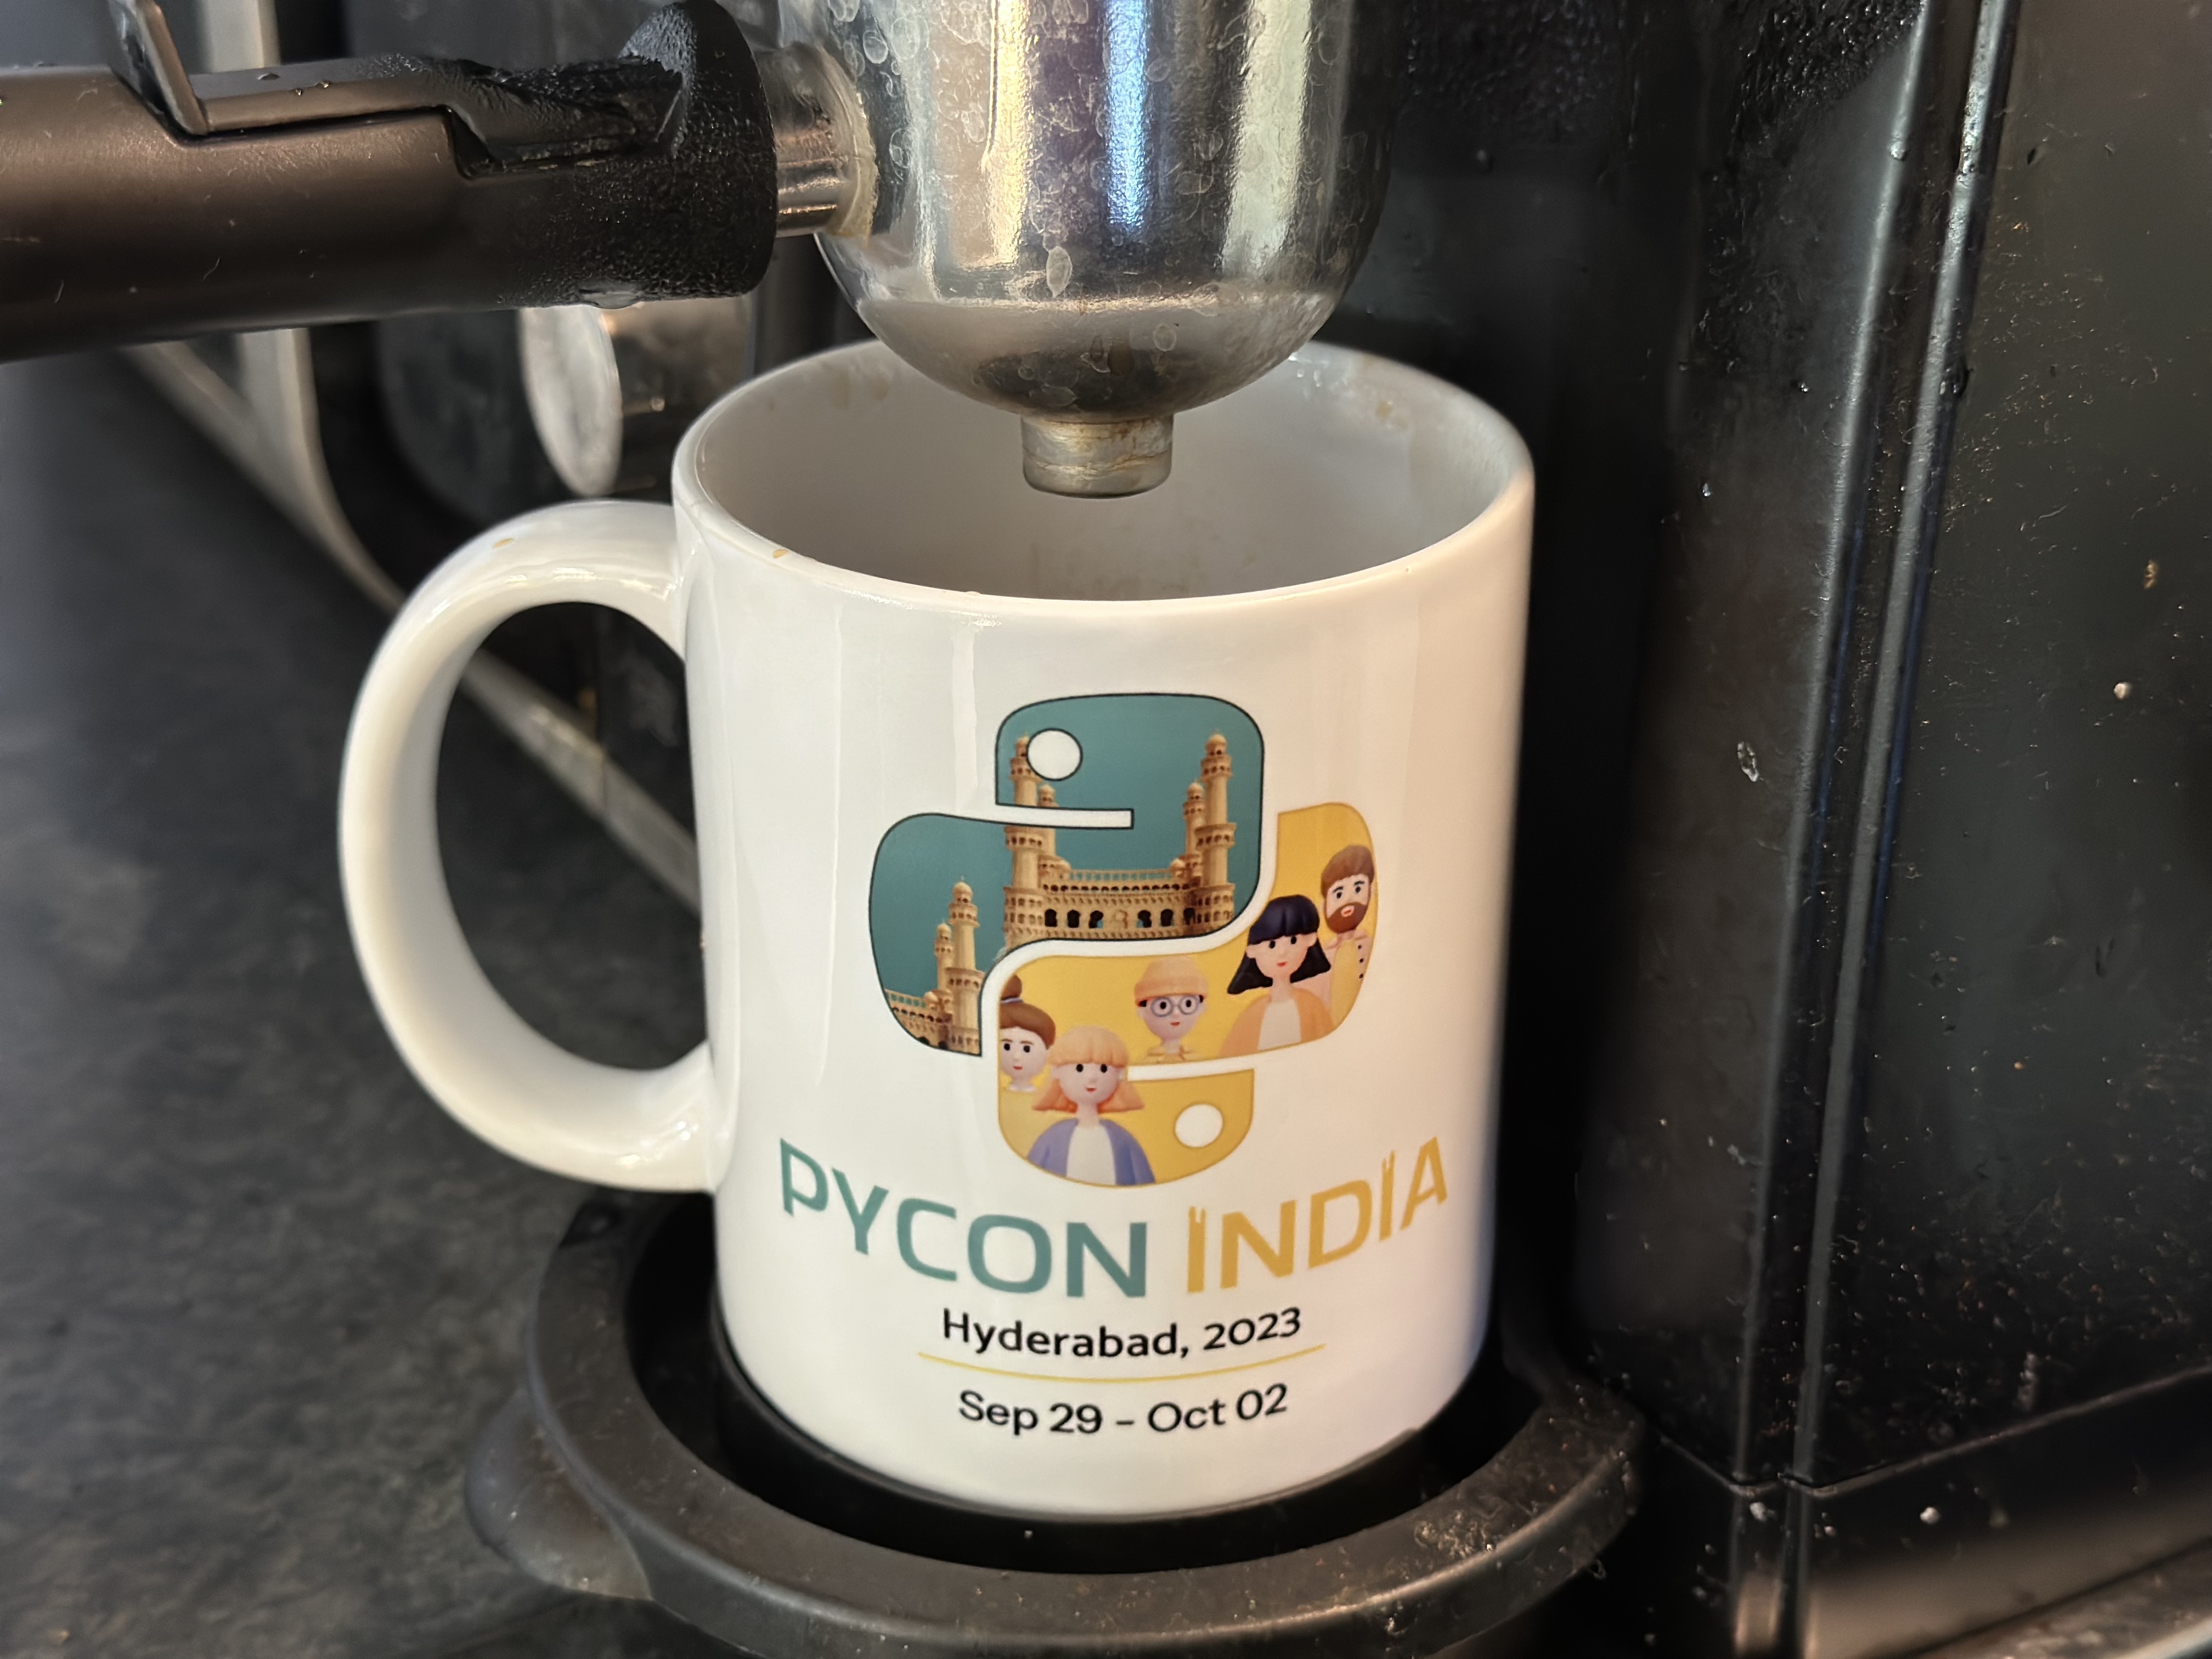 PyCon India 2023